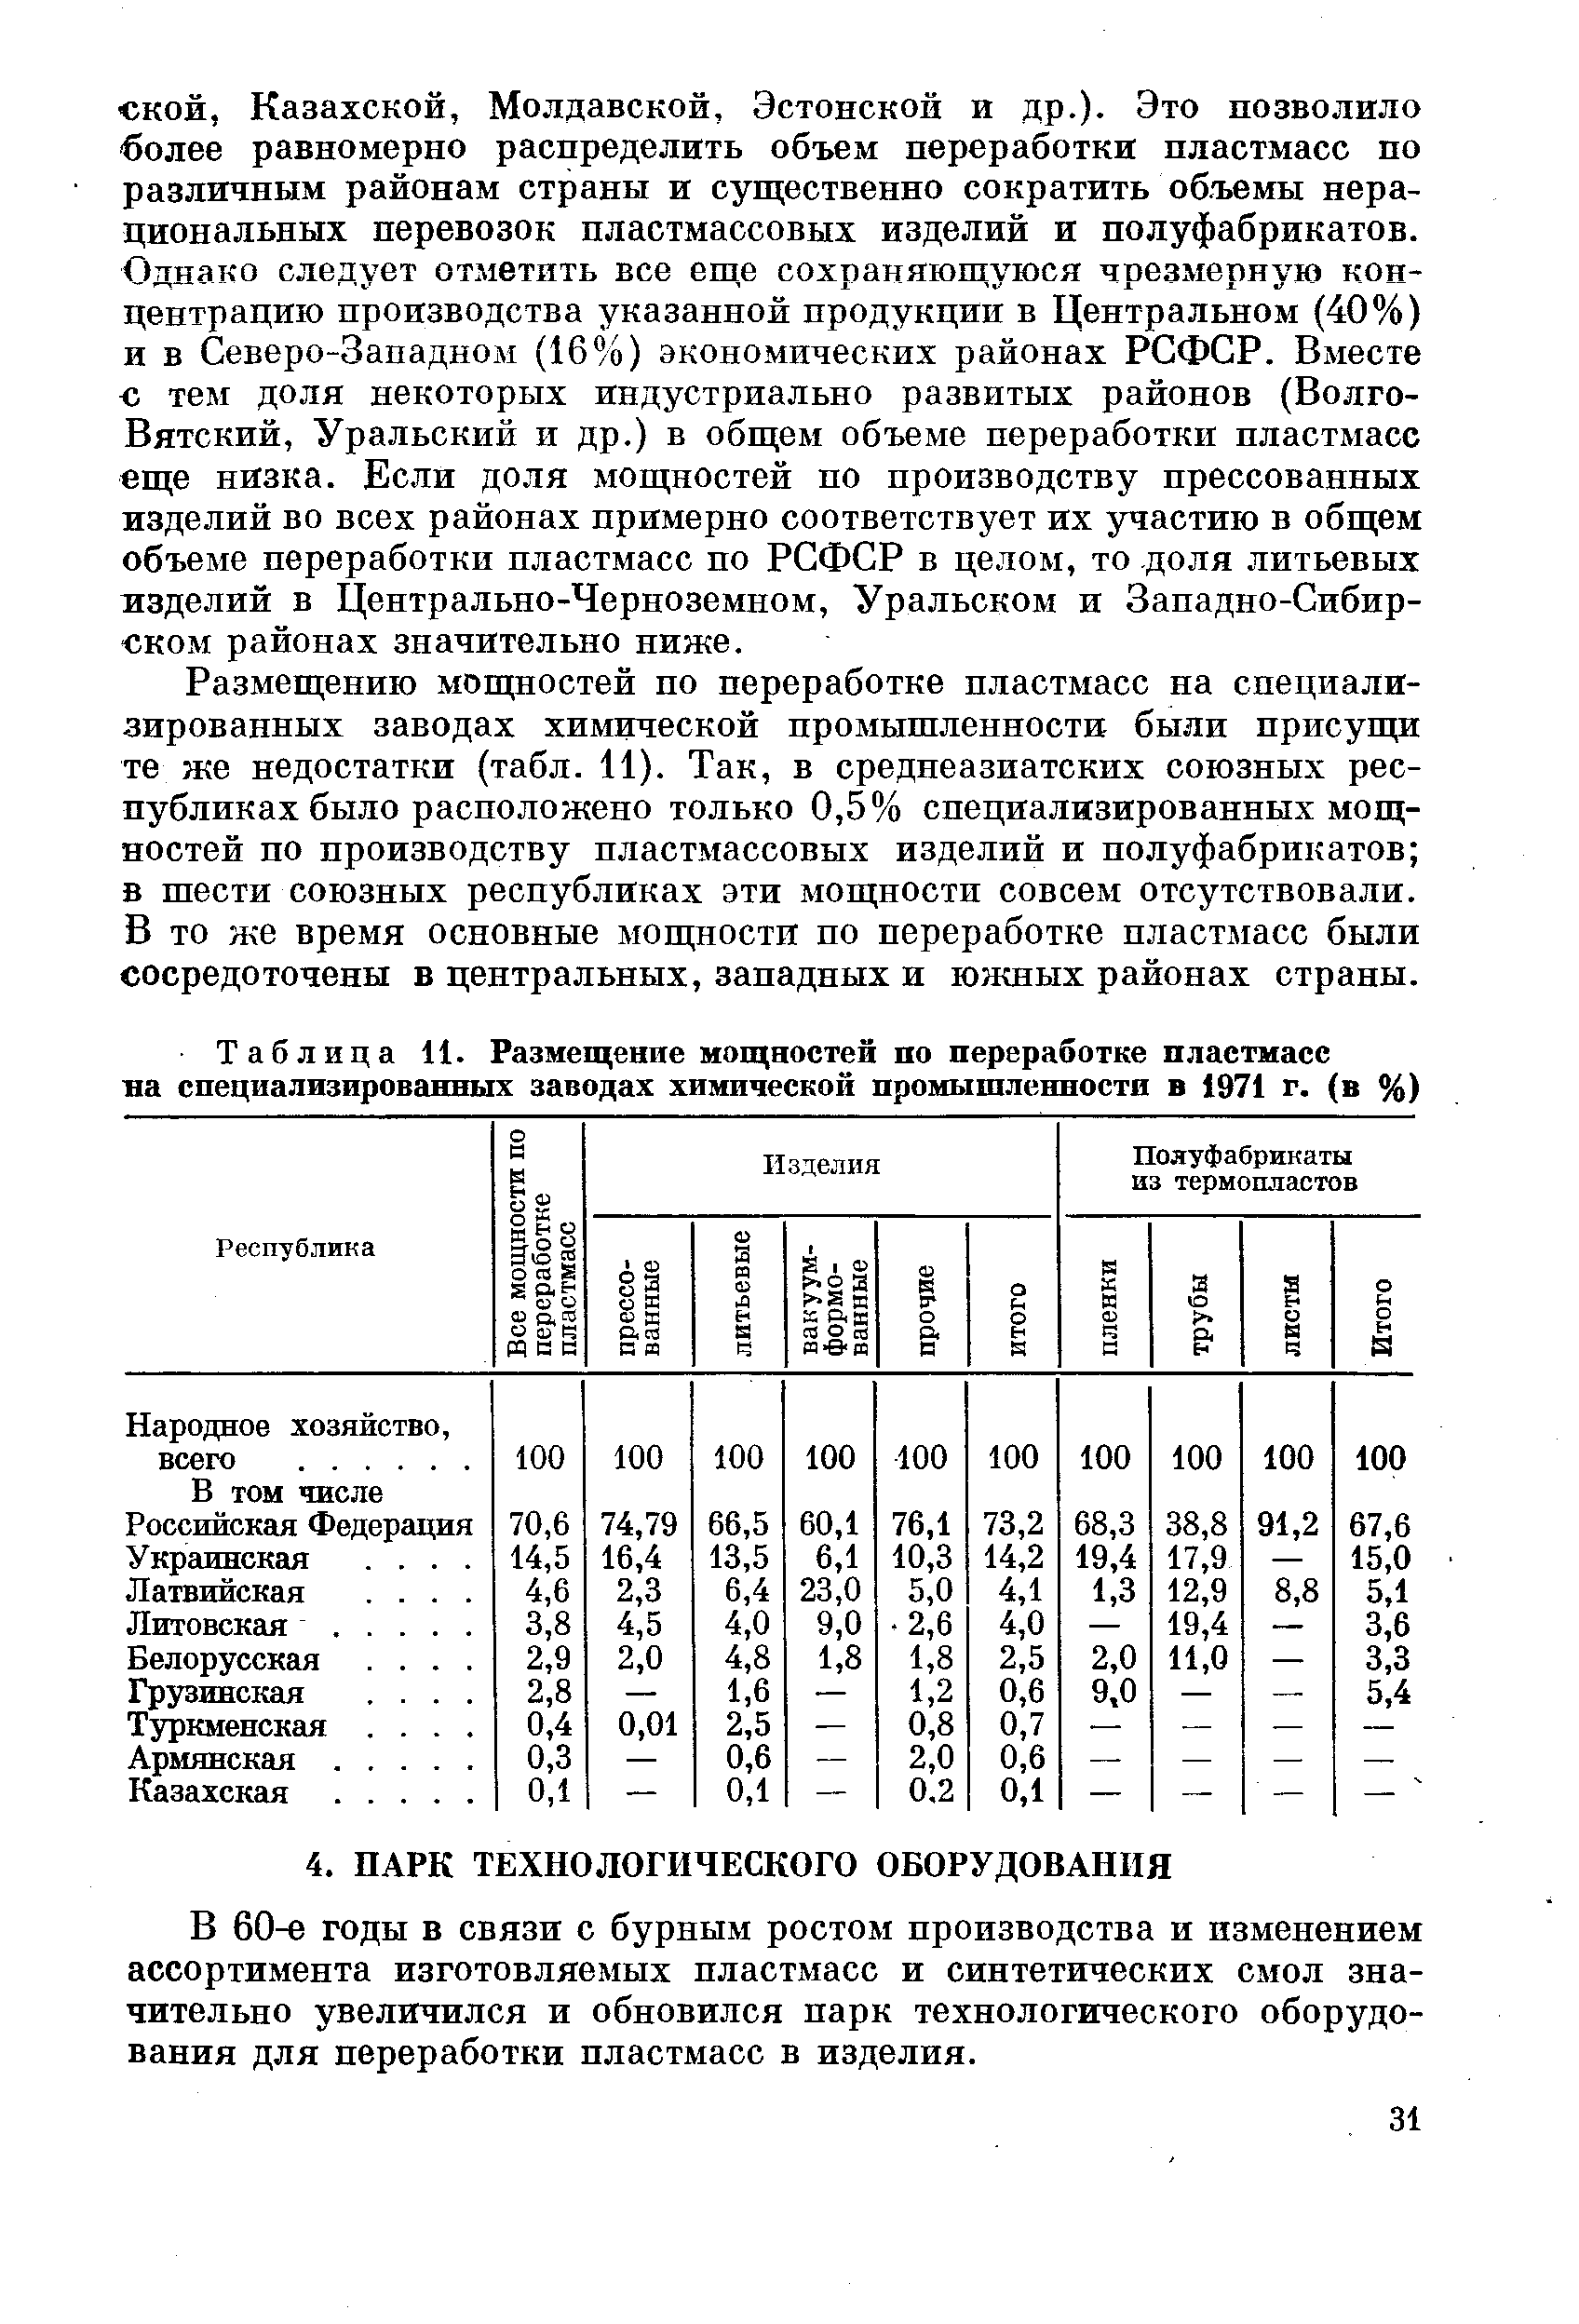 Таблица 11. Размещение мощностей по переработке пластмасс на специализированных заводах химической промышленности в 1971 г. (в %)
